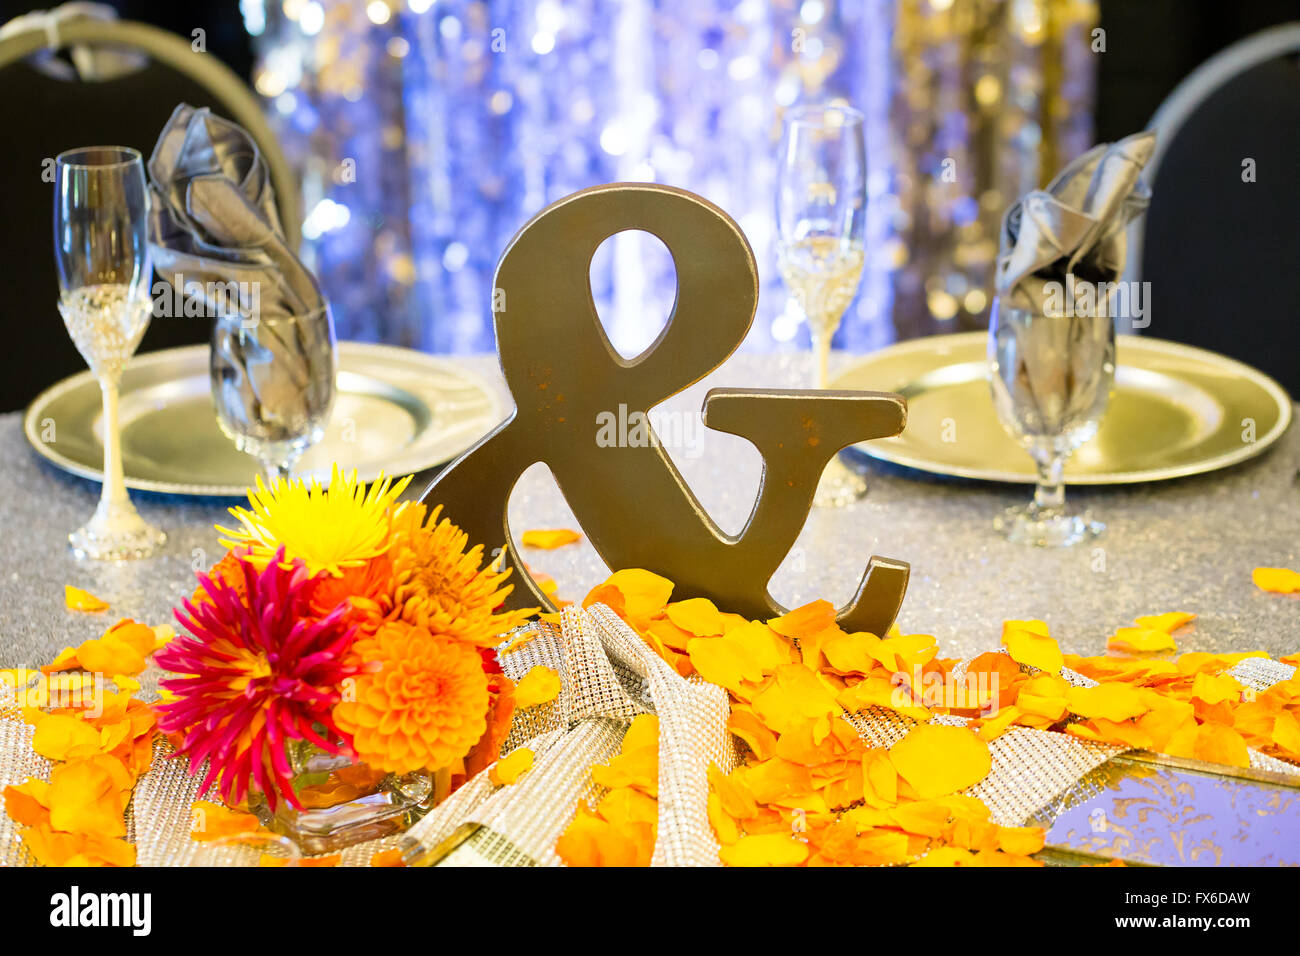 Hochzeit Rezeption Dekor bietet dieses Metall Ampersand-Zeichen am Tisch für das Brautpaar. Stockfoto